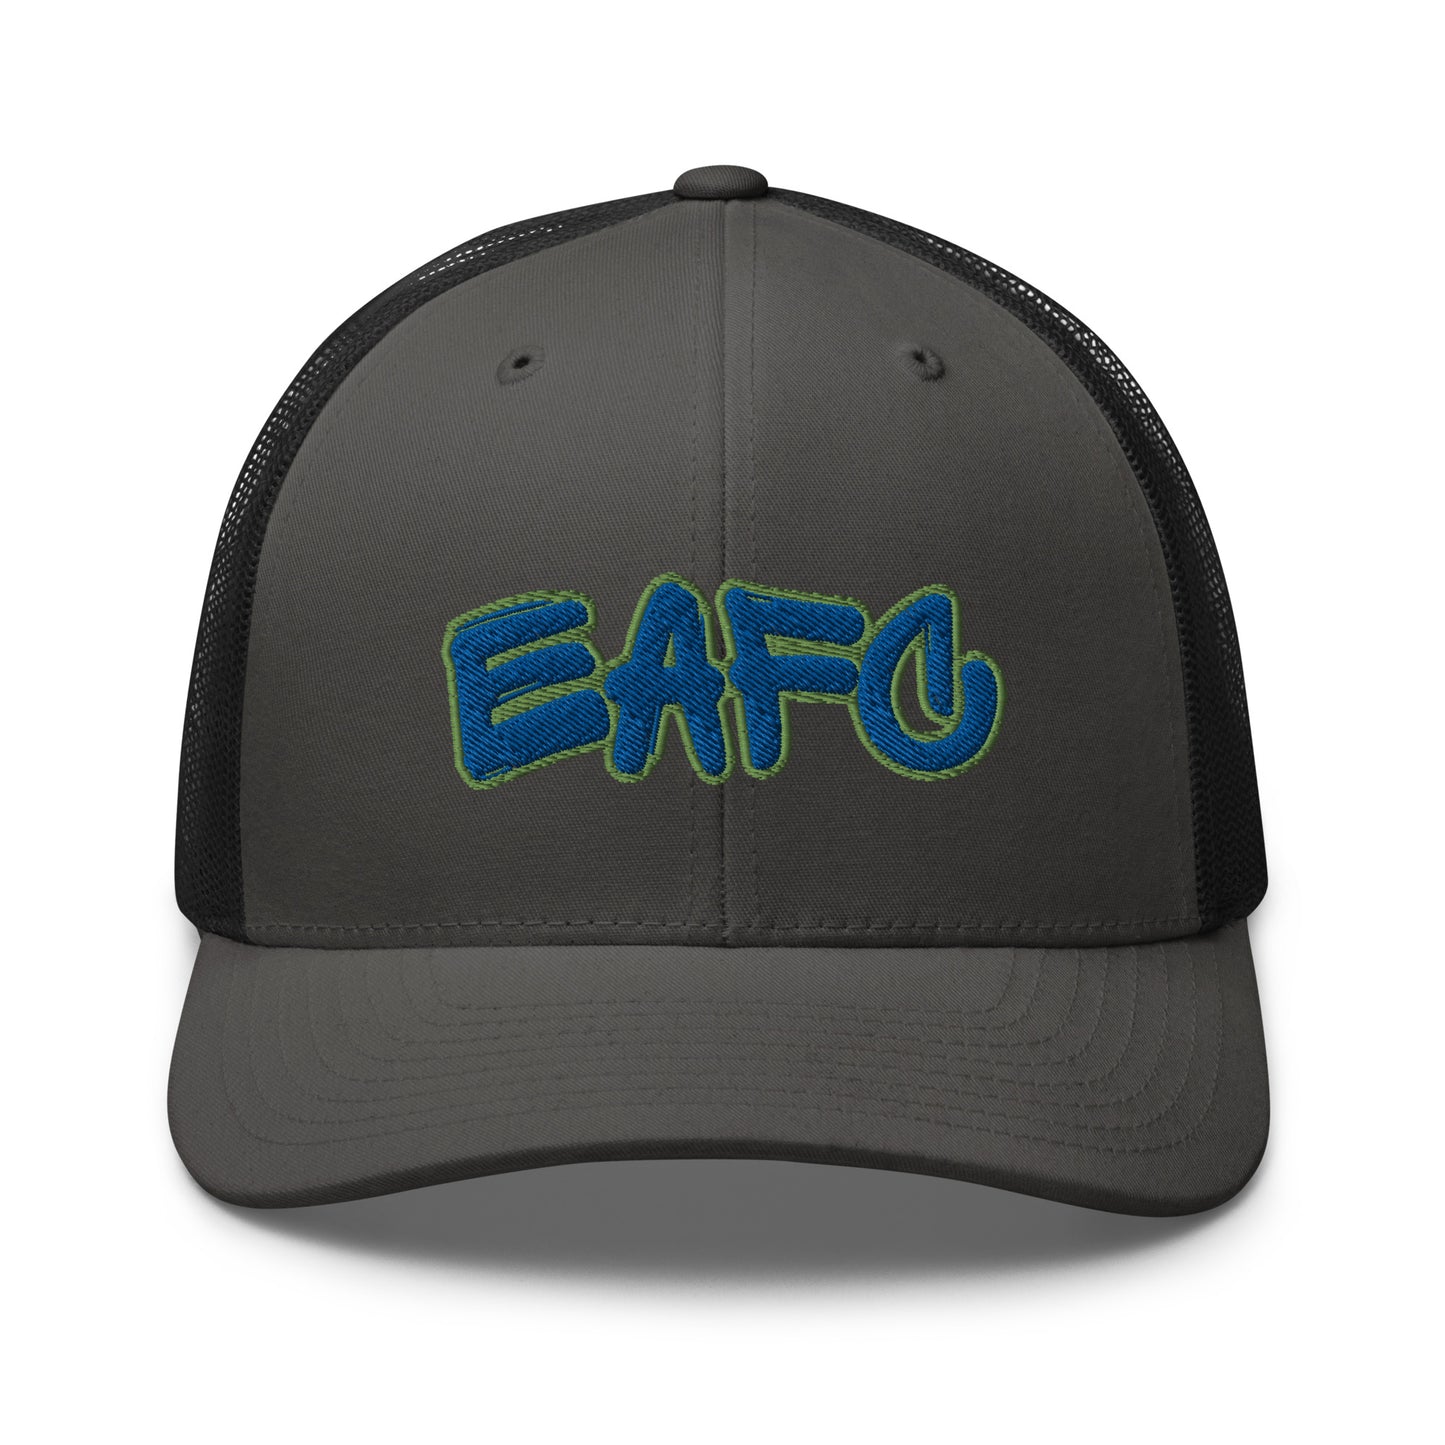 EAFC Trucker Cap